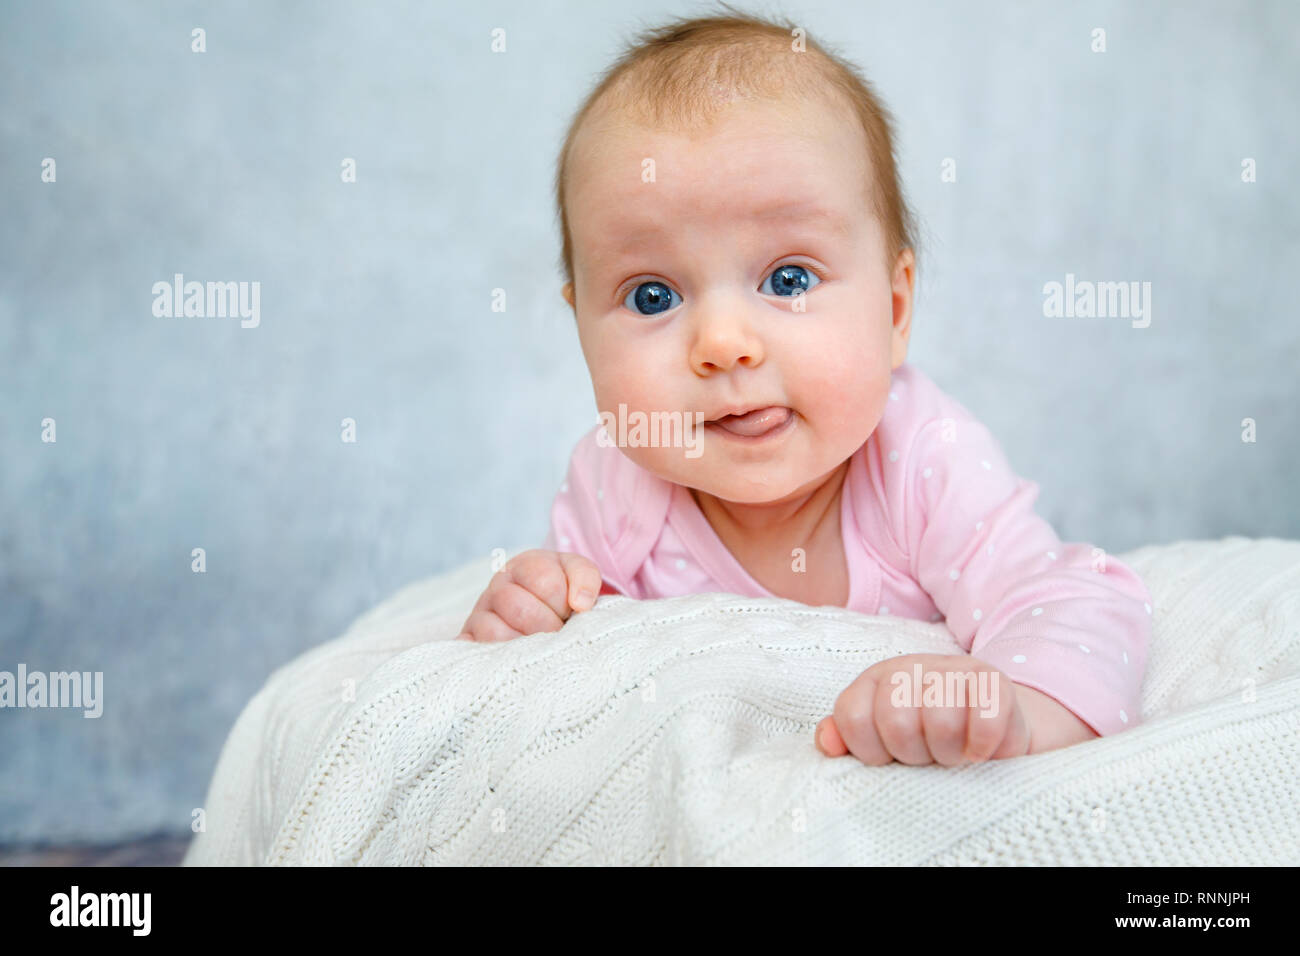 Retrato de un lindo bebé recién nacido recostado sobre su estómago Foto de stock